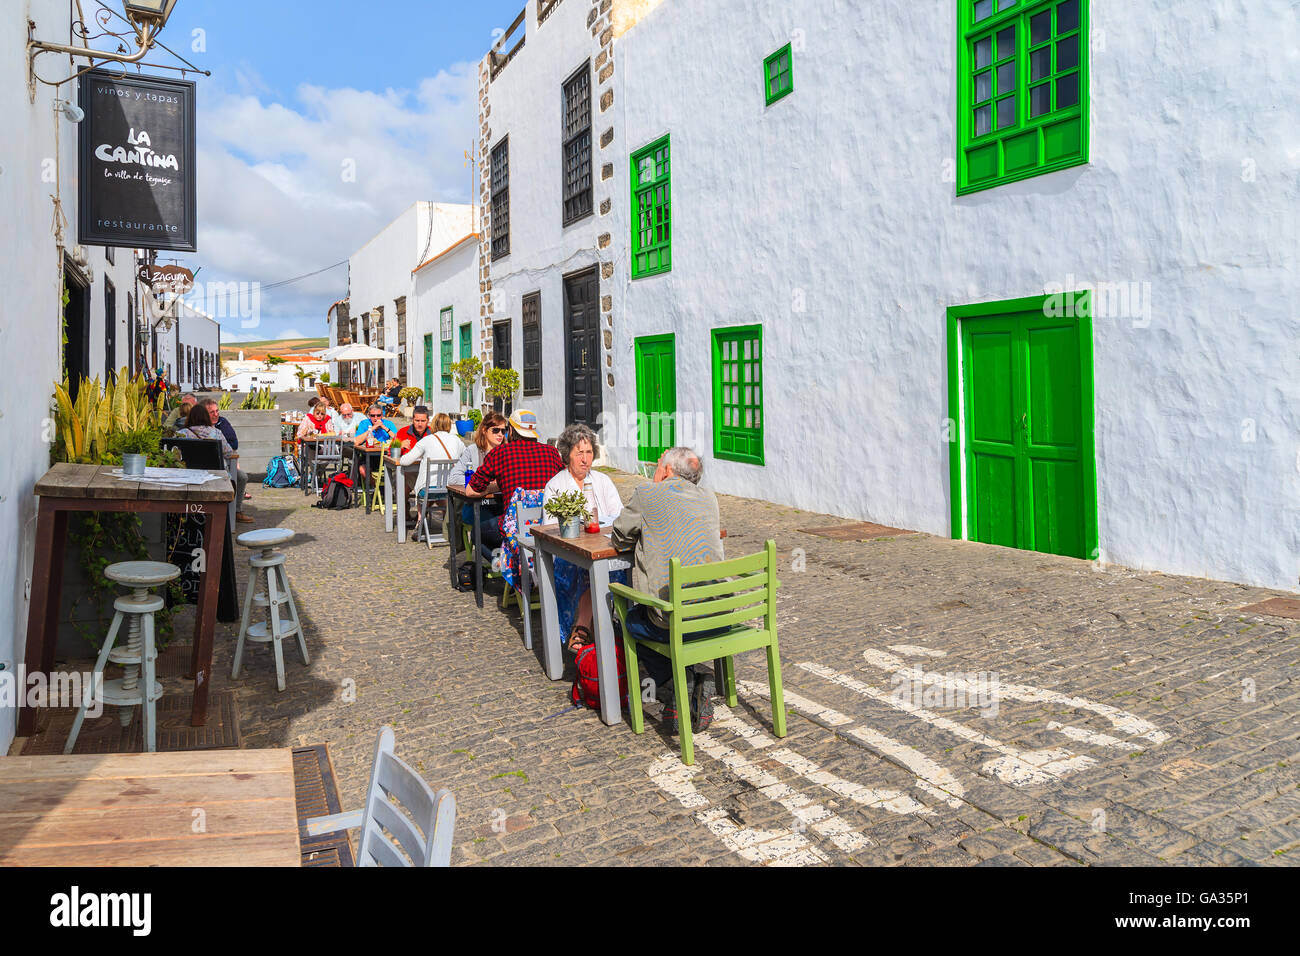 Stadt TEGUISE, LANZAROTE Insel - 14. Januar 2015: Touristen sitzen im Restaurant in der alten Stadt von Teguise. Diese Stadt ist die ehemalige Hauptstadt der Insel Lanzarote und ist sehr beliebte Attraktion zu sehen. Stockfoto